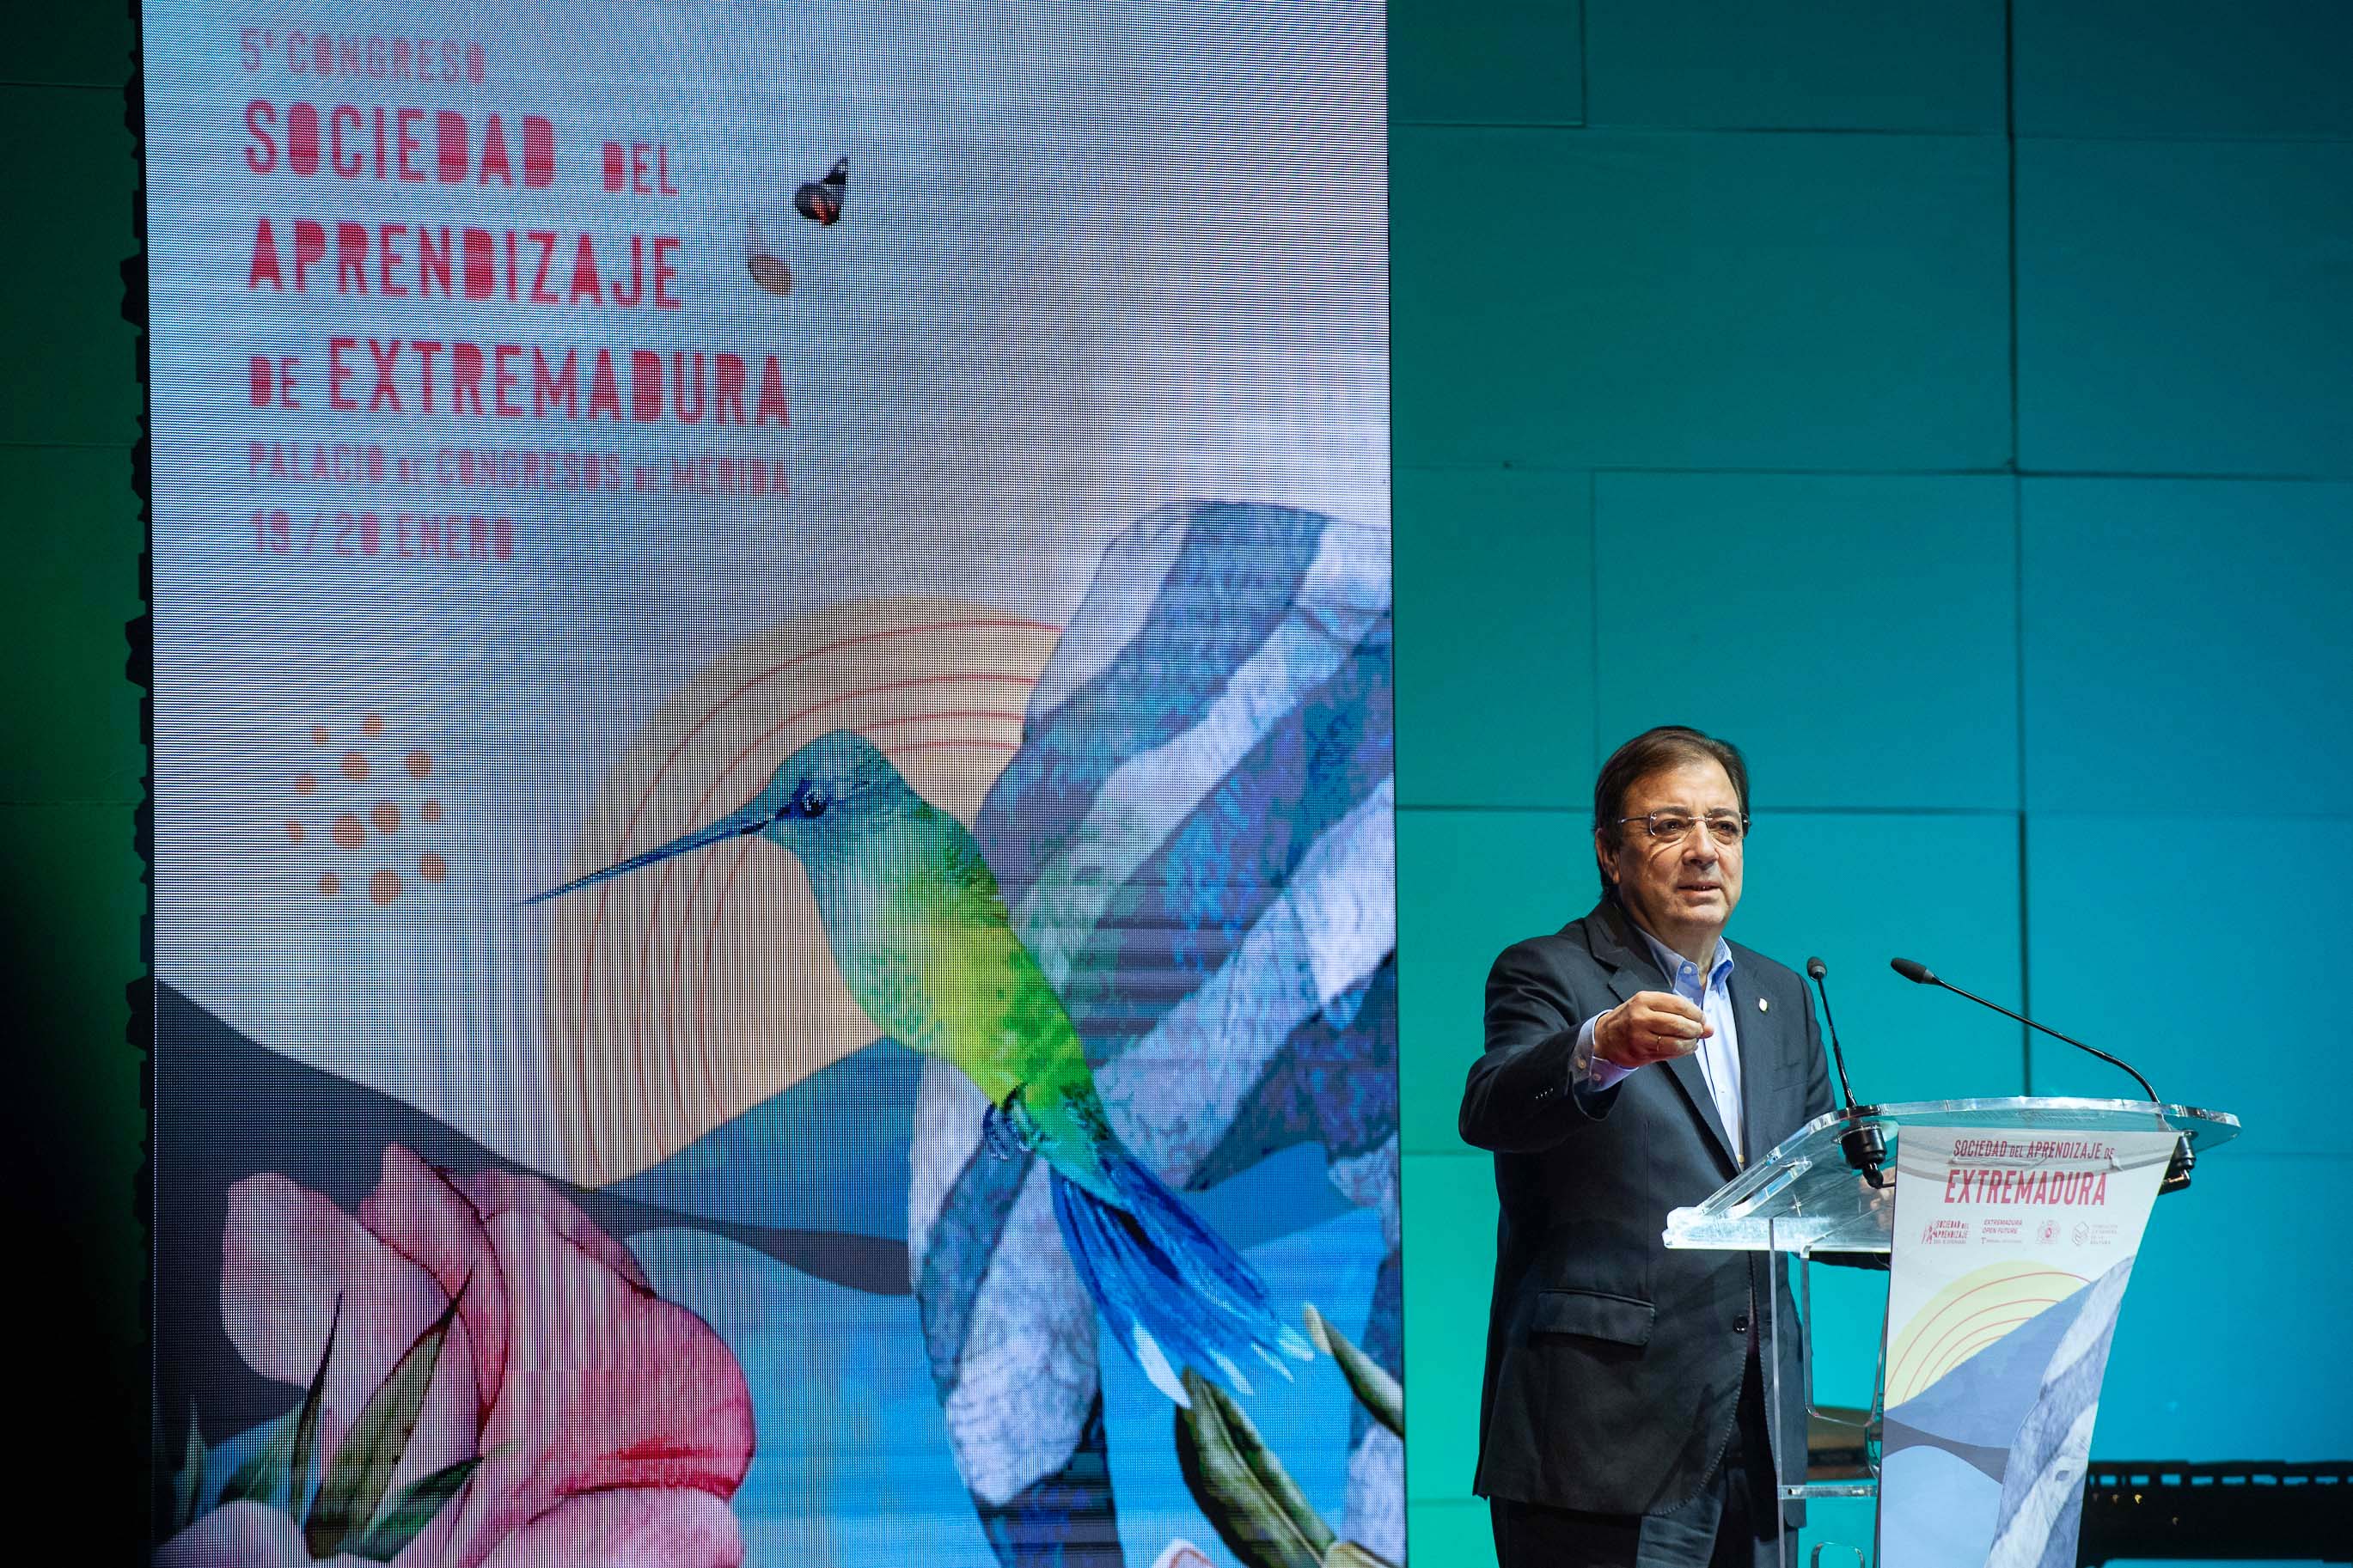 Fernández Vara interviene en la inauguración del Congreso del Aprendizaje